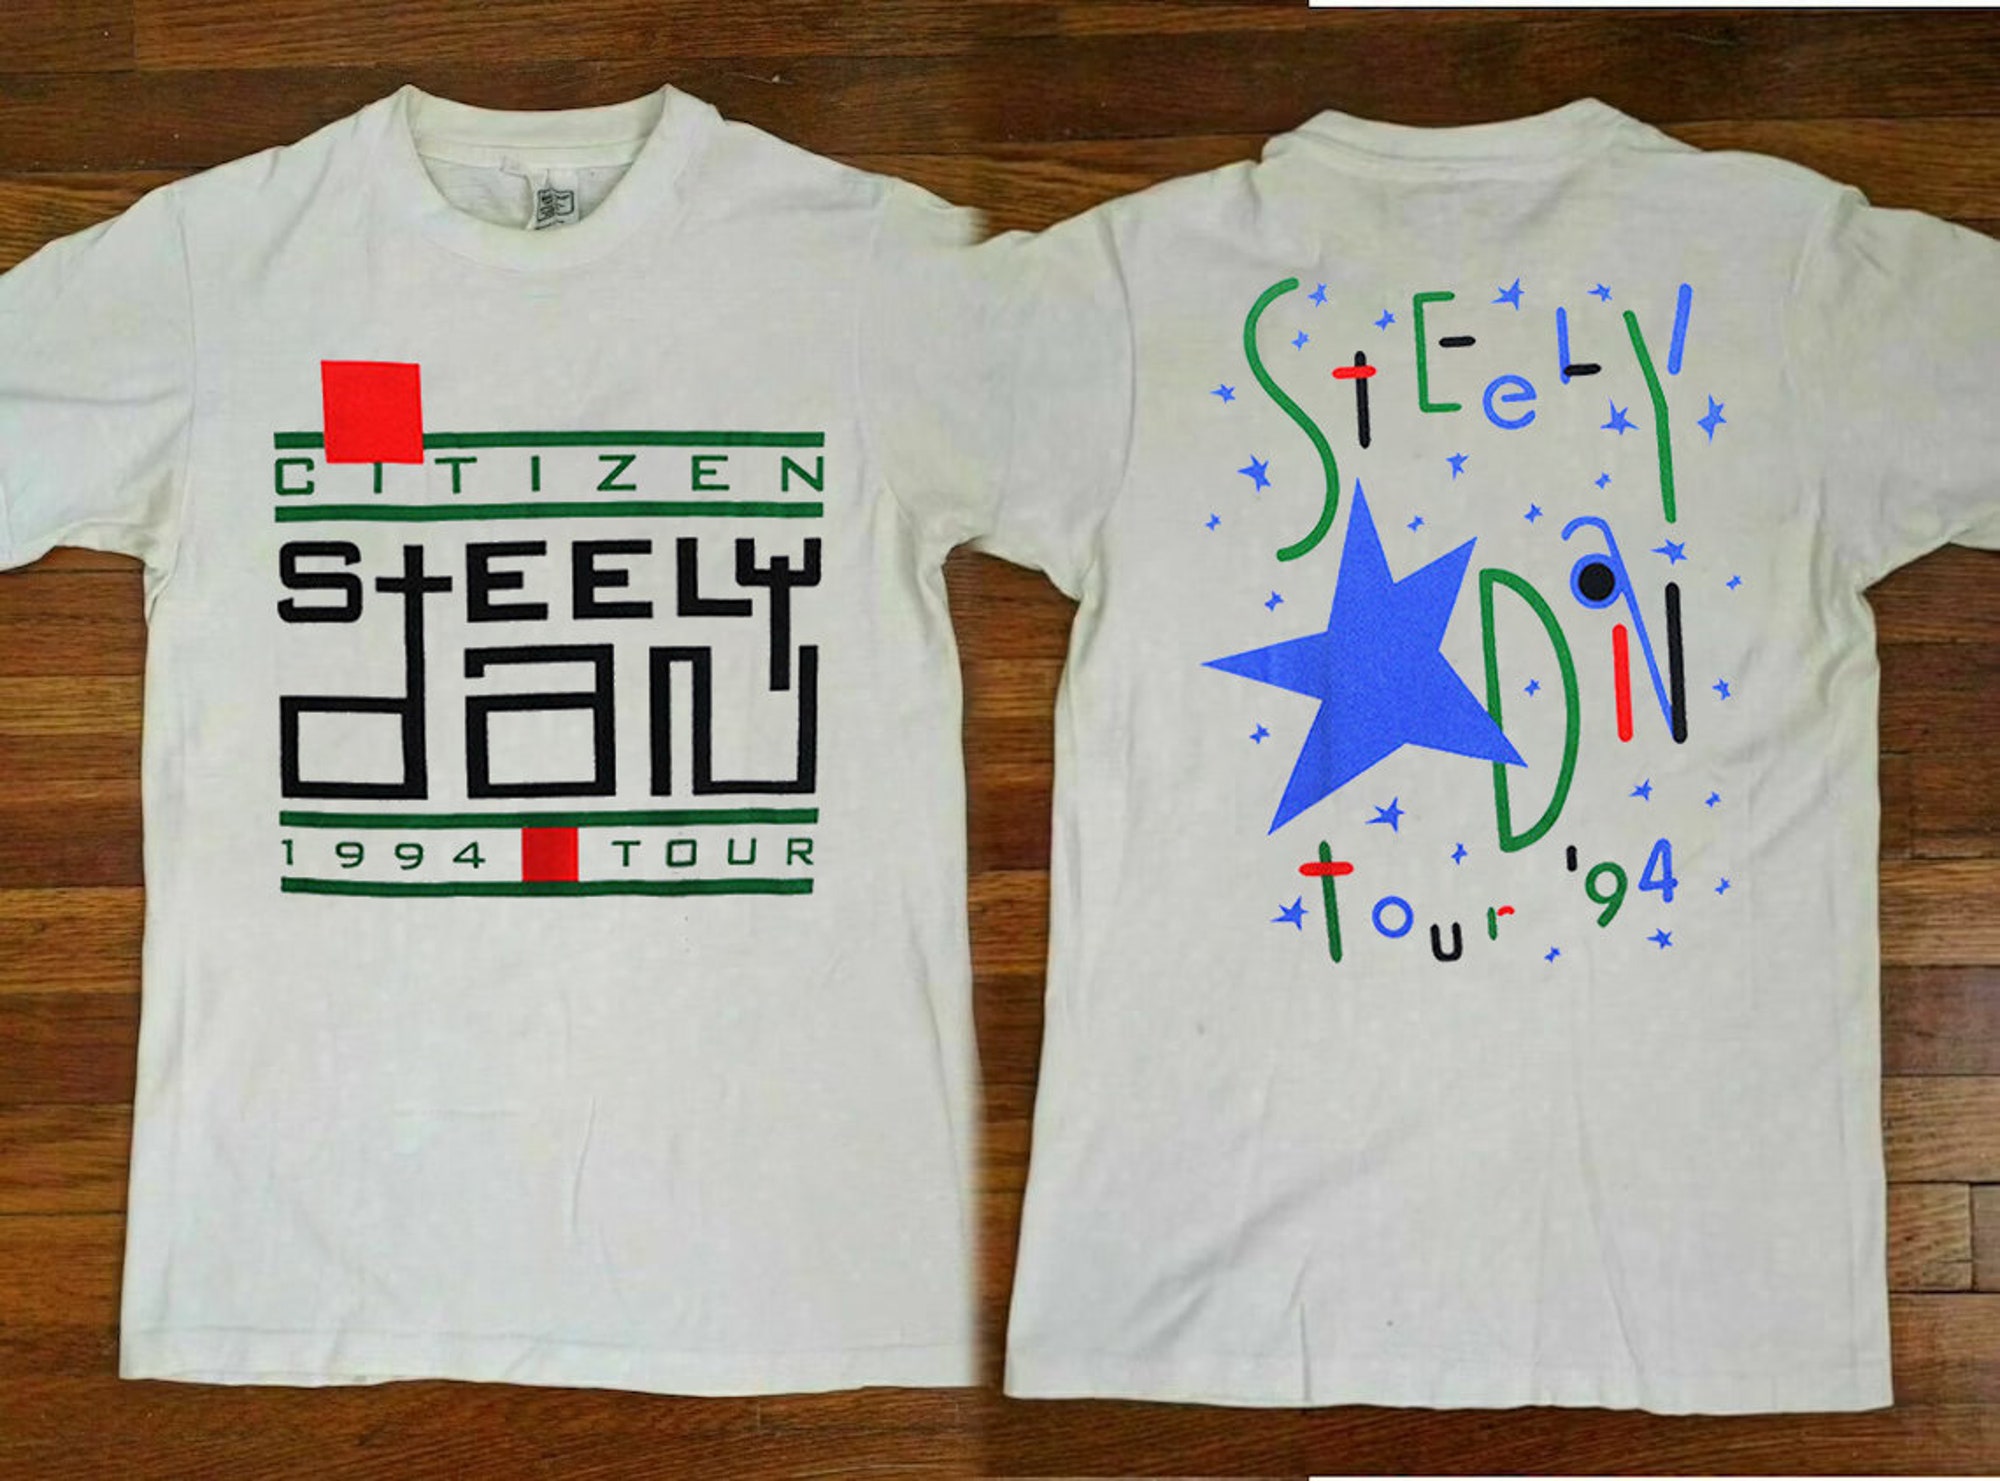 Vintage Citizen Steelly Dan 1994 Tour Concert T-Shirt